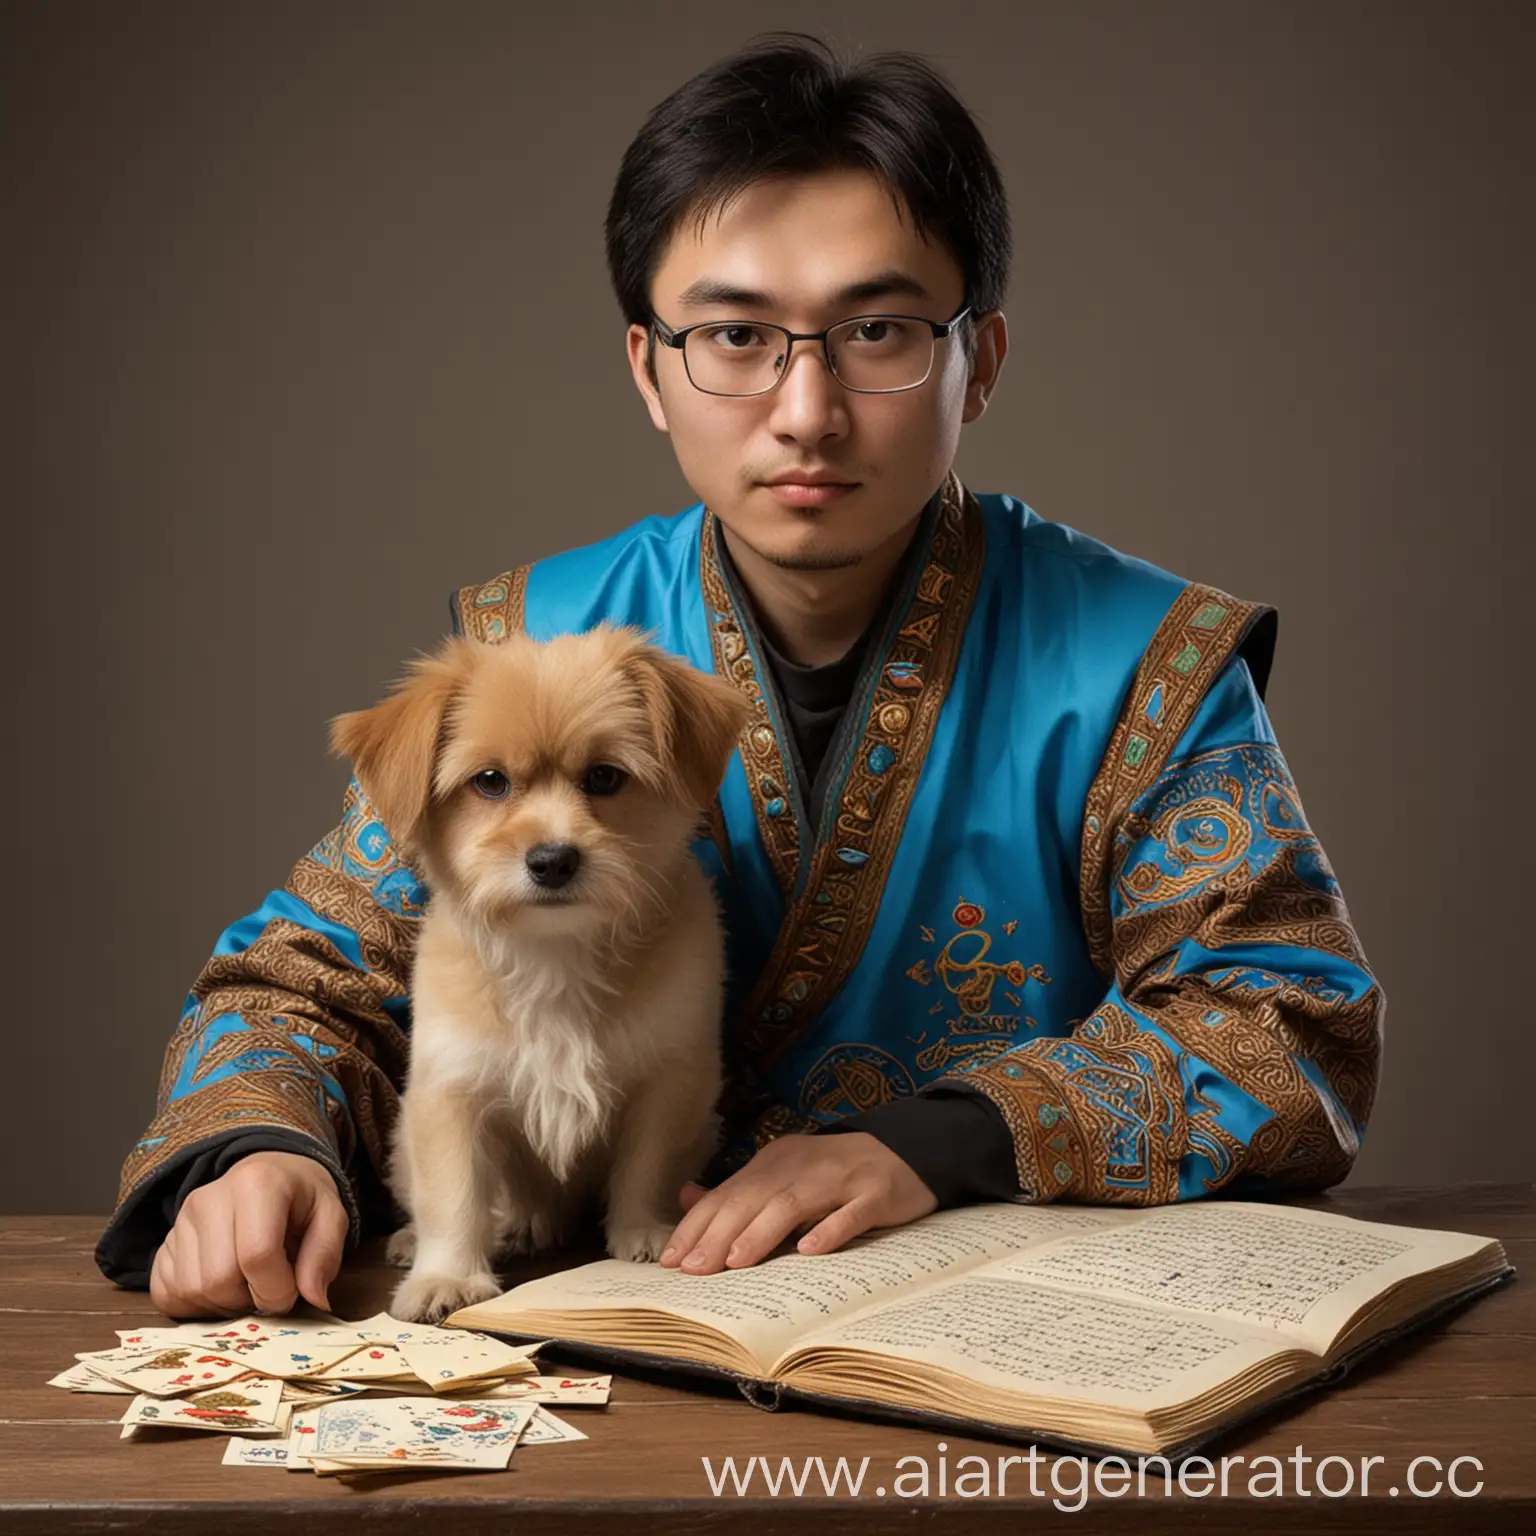 Kazakh-Mathematician-with-Mopso-Dog-Playing-Dota-2